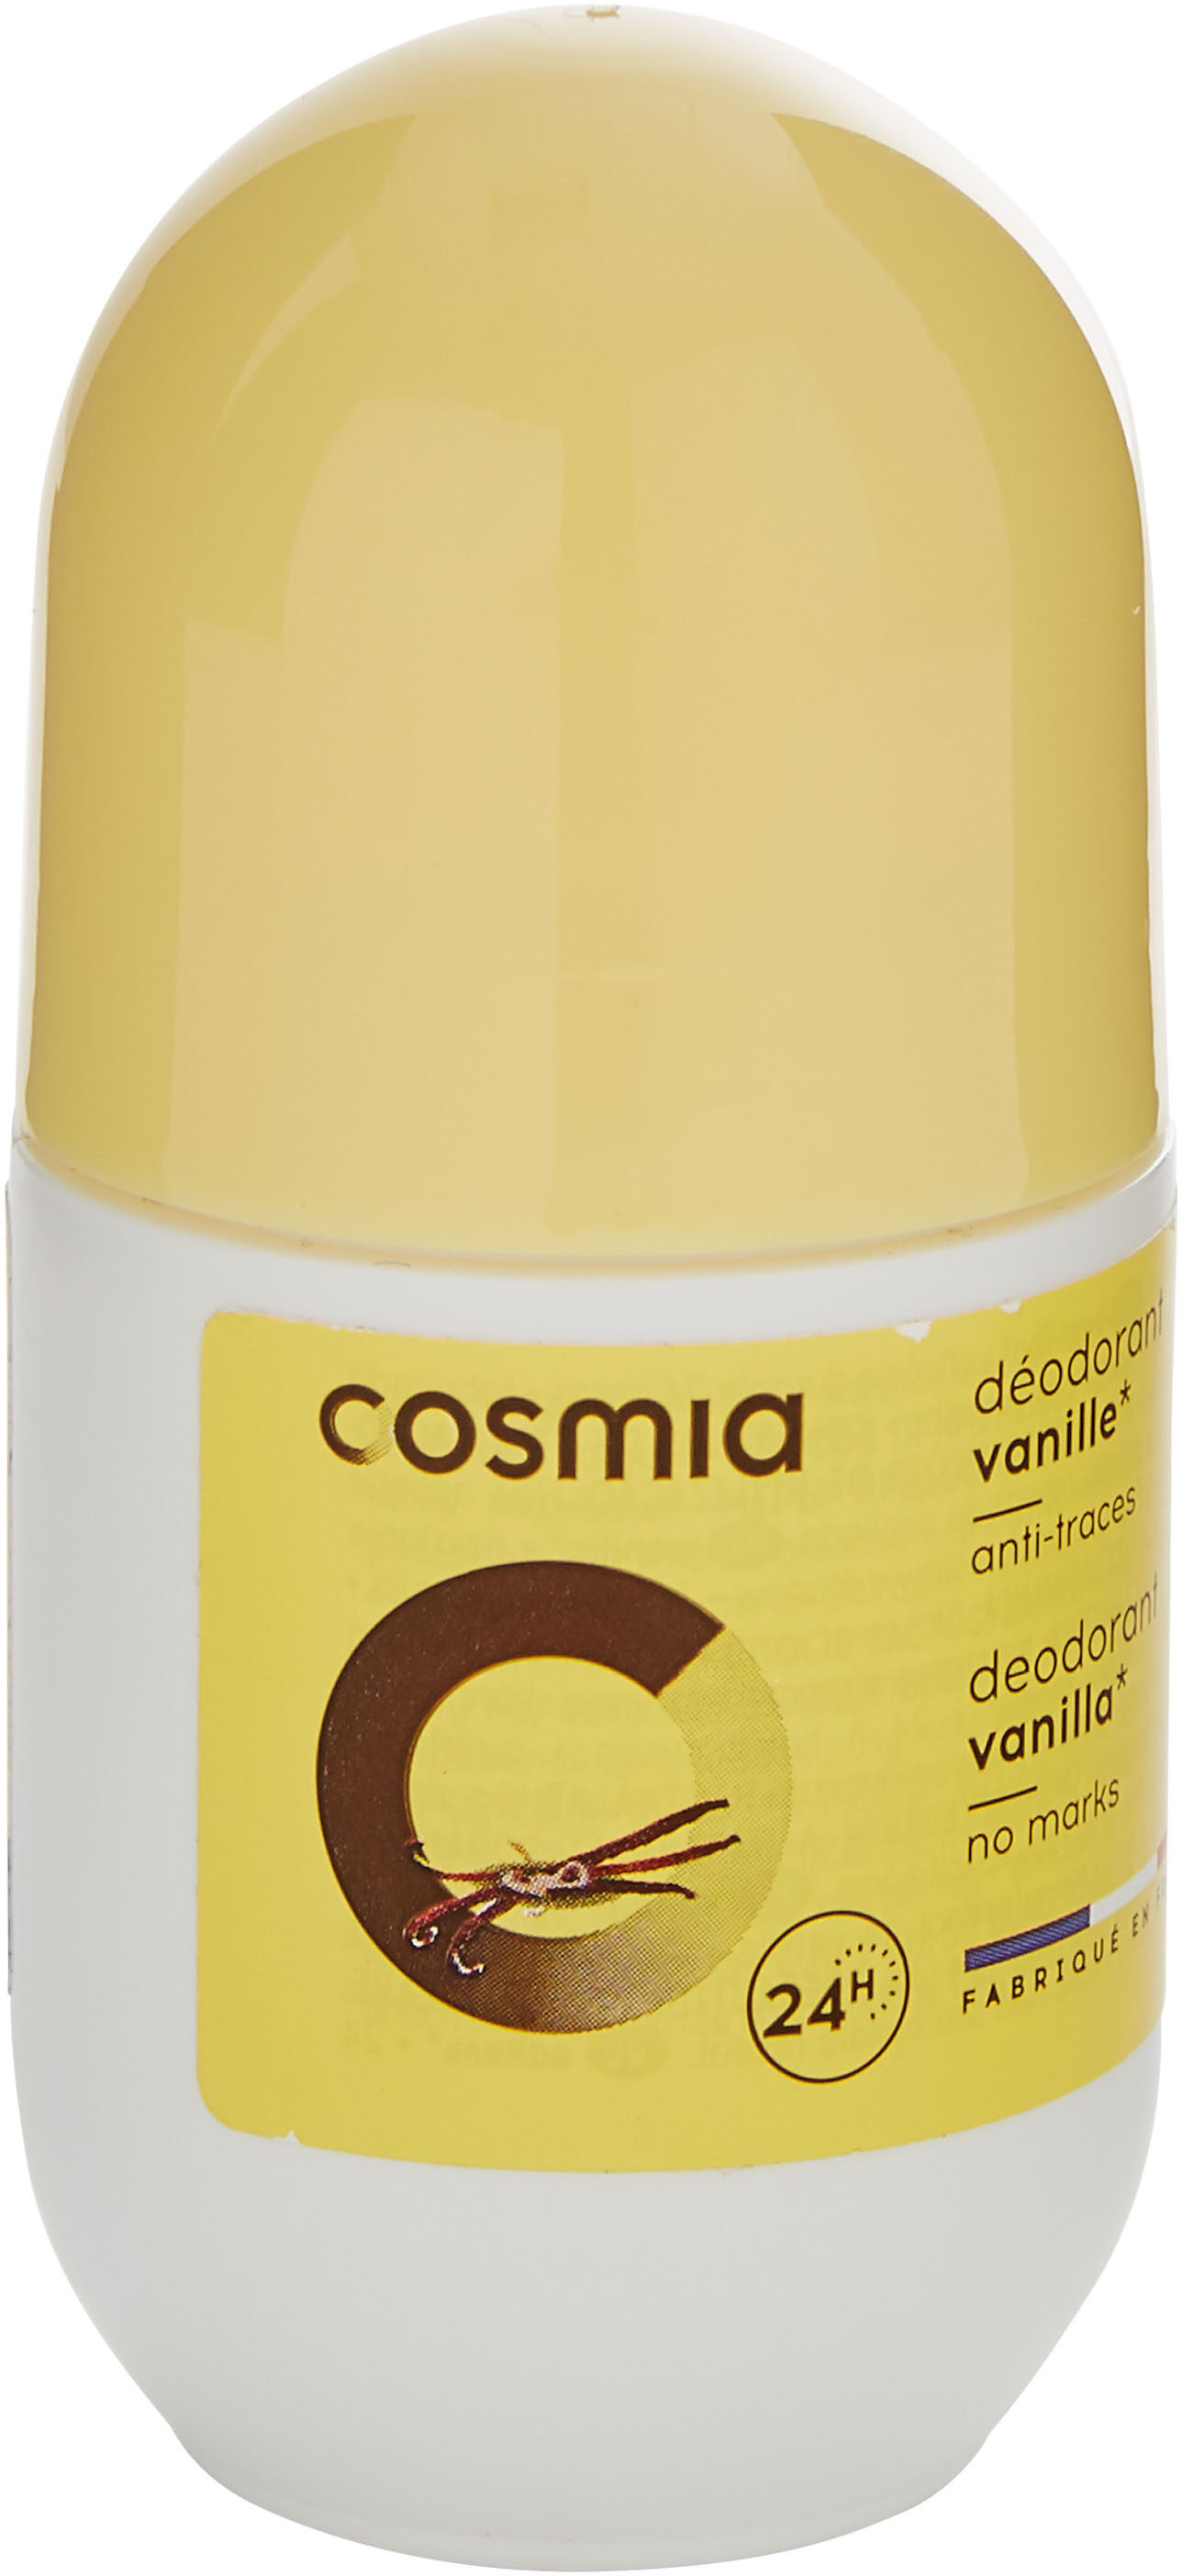 Déodorant vanille - Product - en